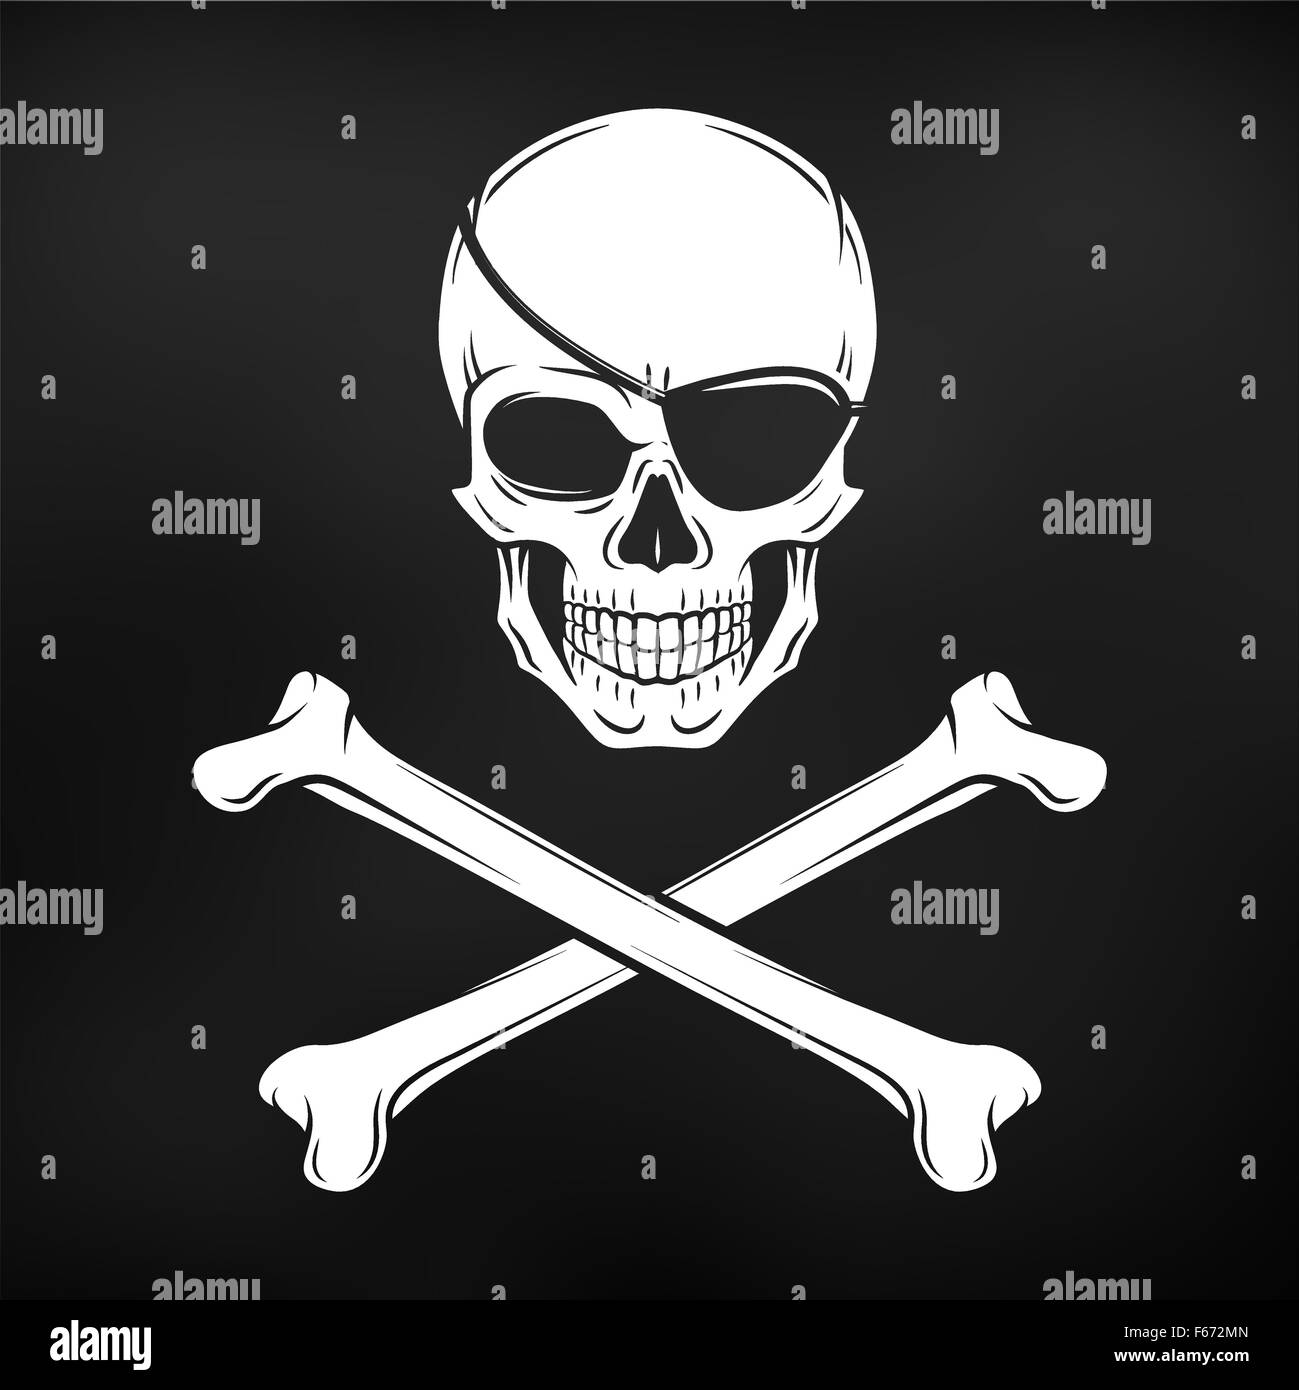 Bandera Pirata Deshilachada Negra Con El Cráneo Y Los Huesos Ilustraciones  svg, vectoriales, clip art vectorizado libre de derechos. Image 80225254